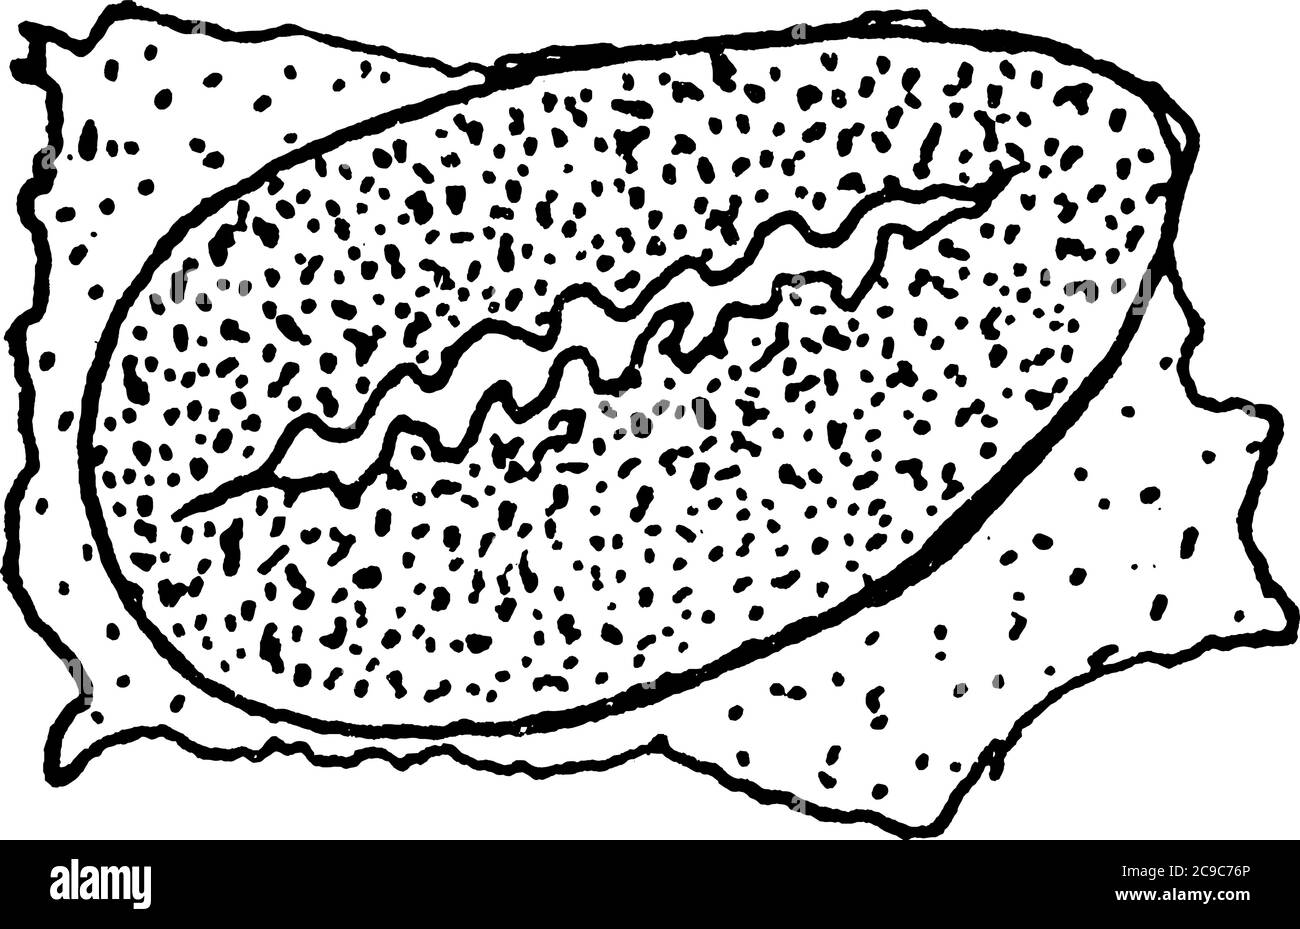 Vista trasversale dello spiracolo del sistema respiratorio di un insetto, disegno di una linea d'annata o illustrazione di incisione. Illustrazione Vettoriale